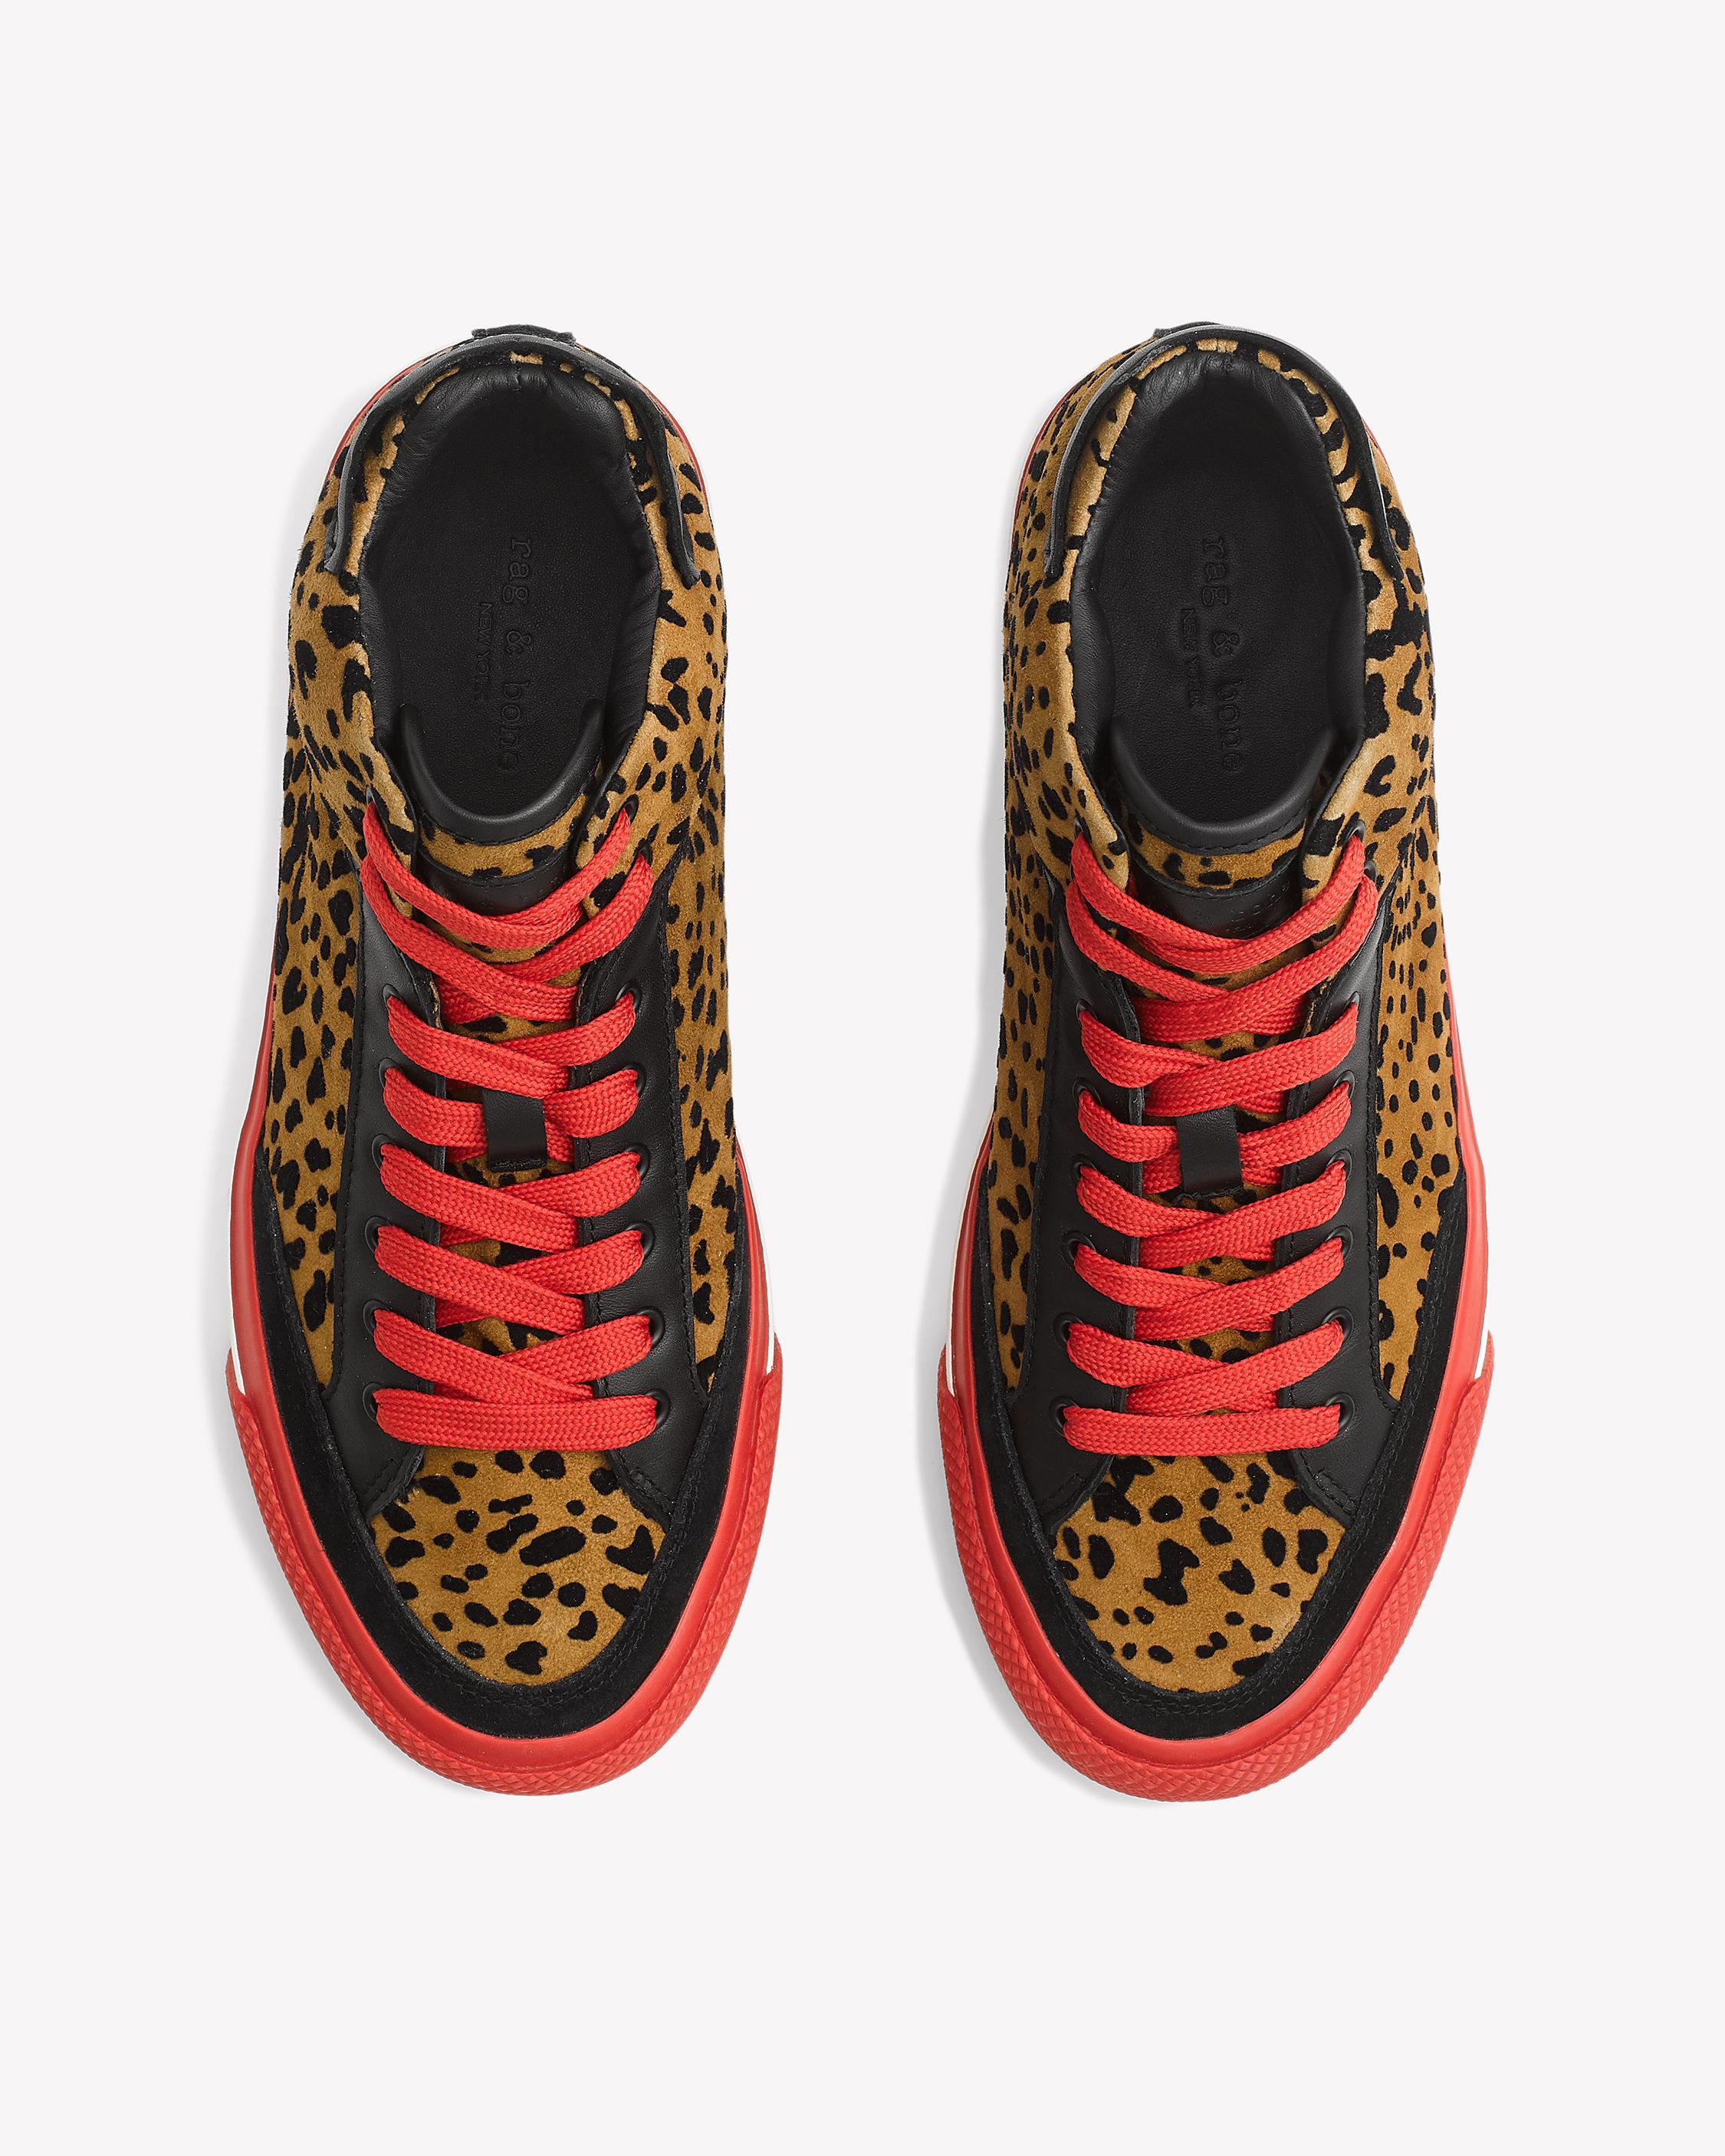 rag and bone cheetah sneakers